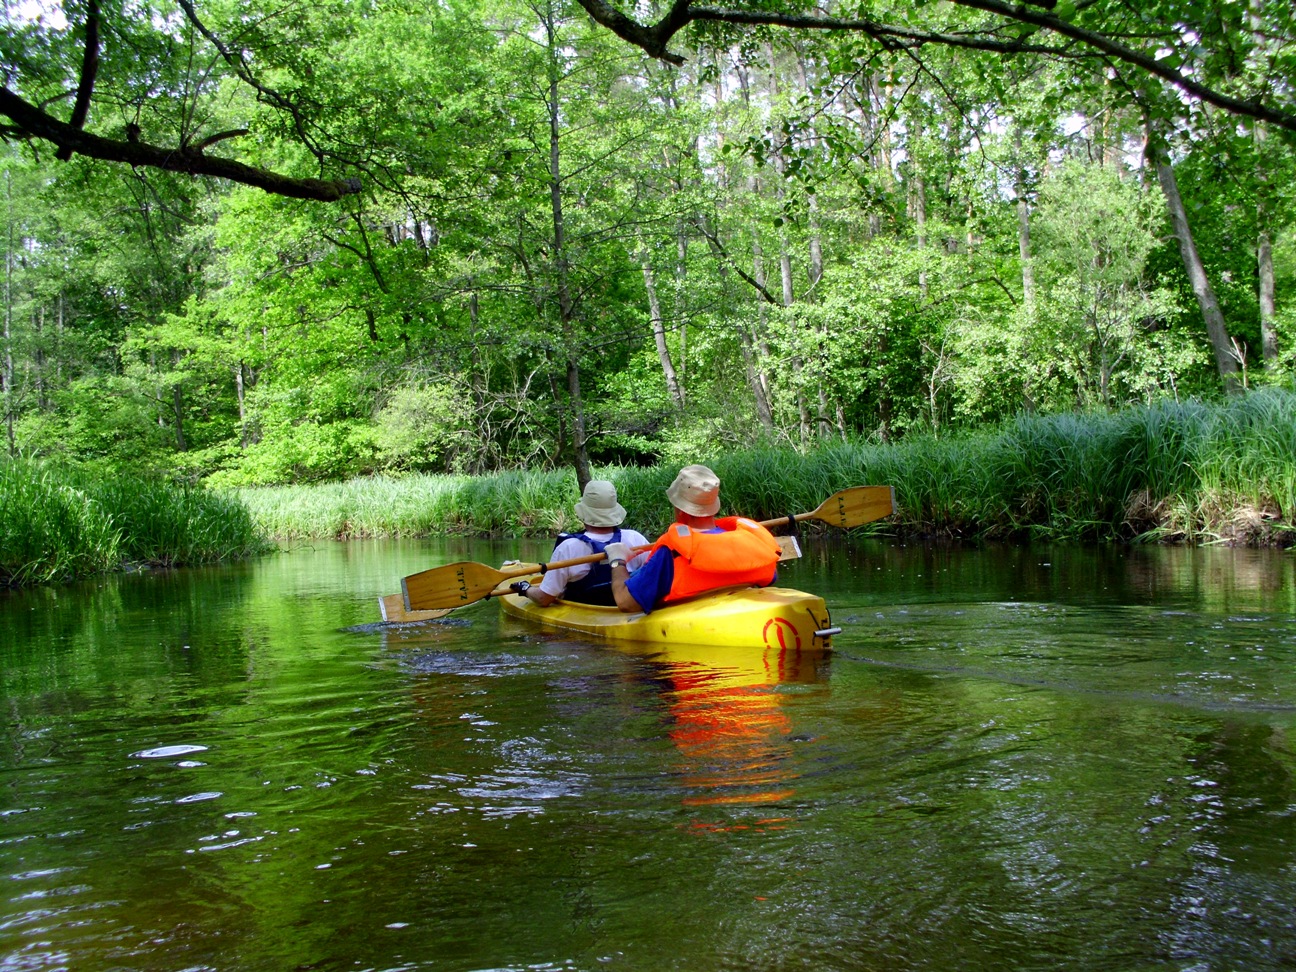 Kayaking on Mysla river